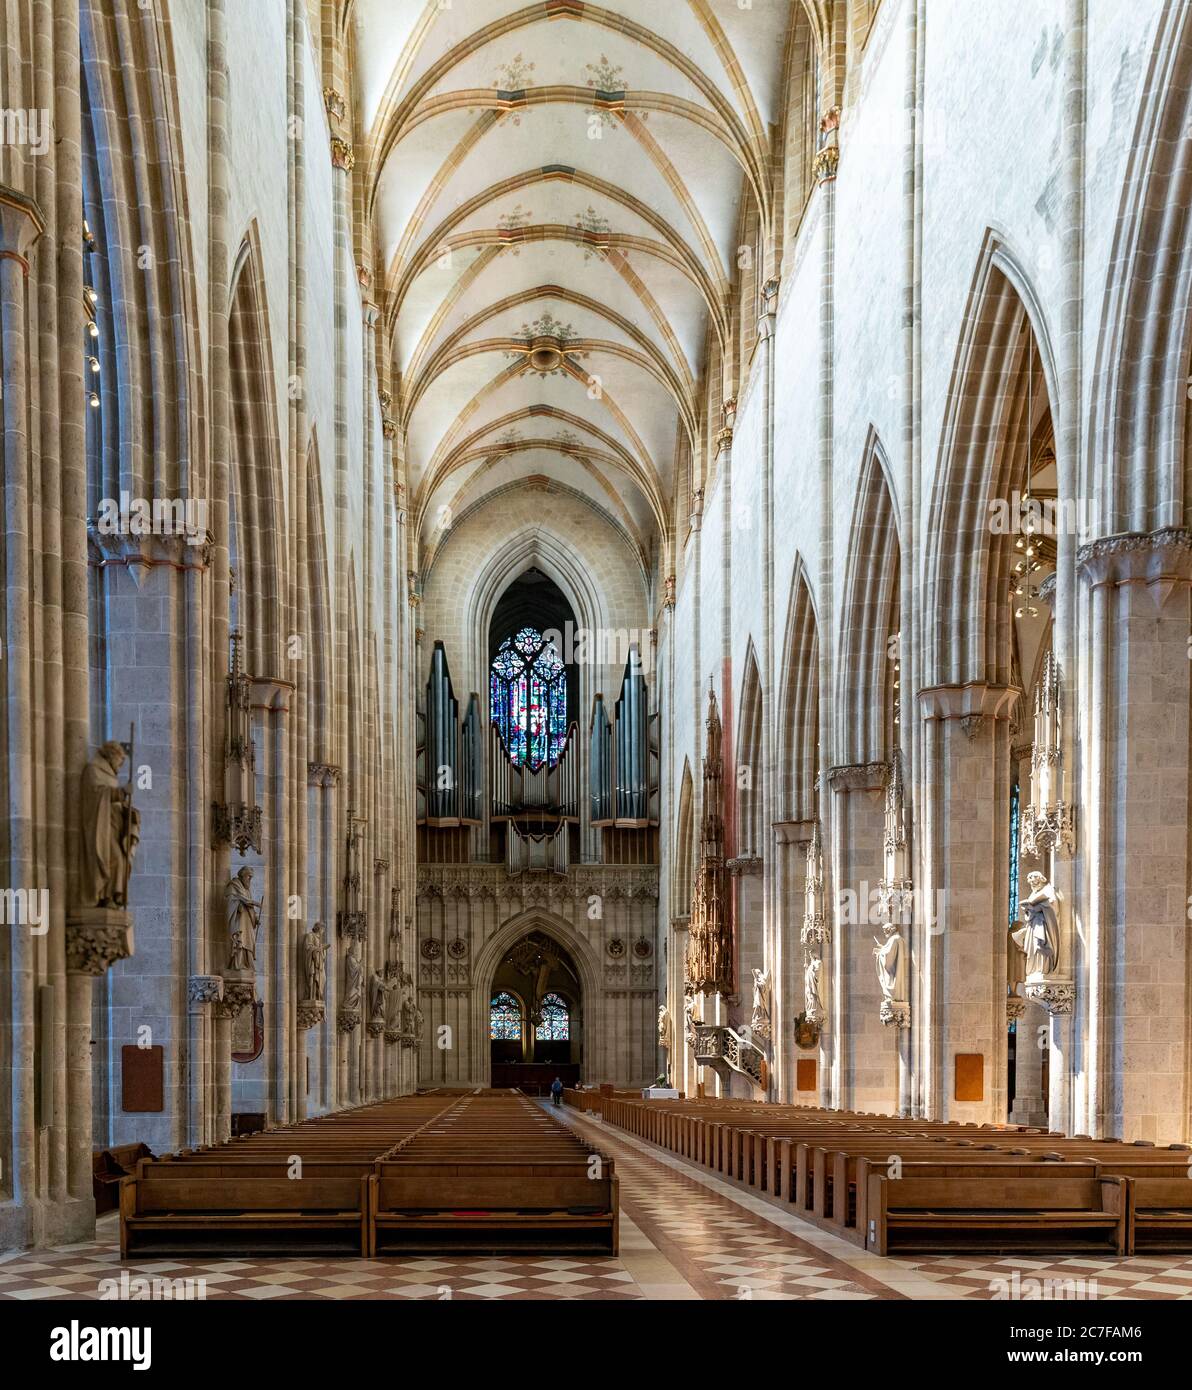 Ulm, BW / Germania - 14 luglio 2020: Vista della navata centrale e dell'estremità occidentale con organo nella cattedrale di Ulm Foto Stock